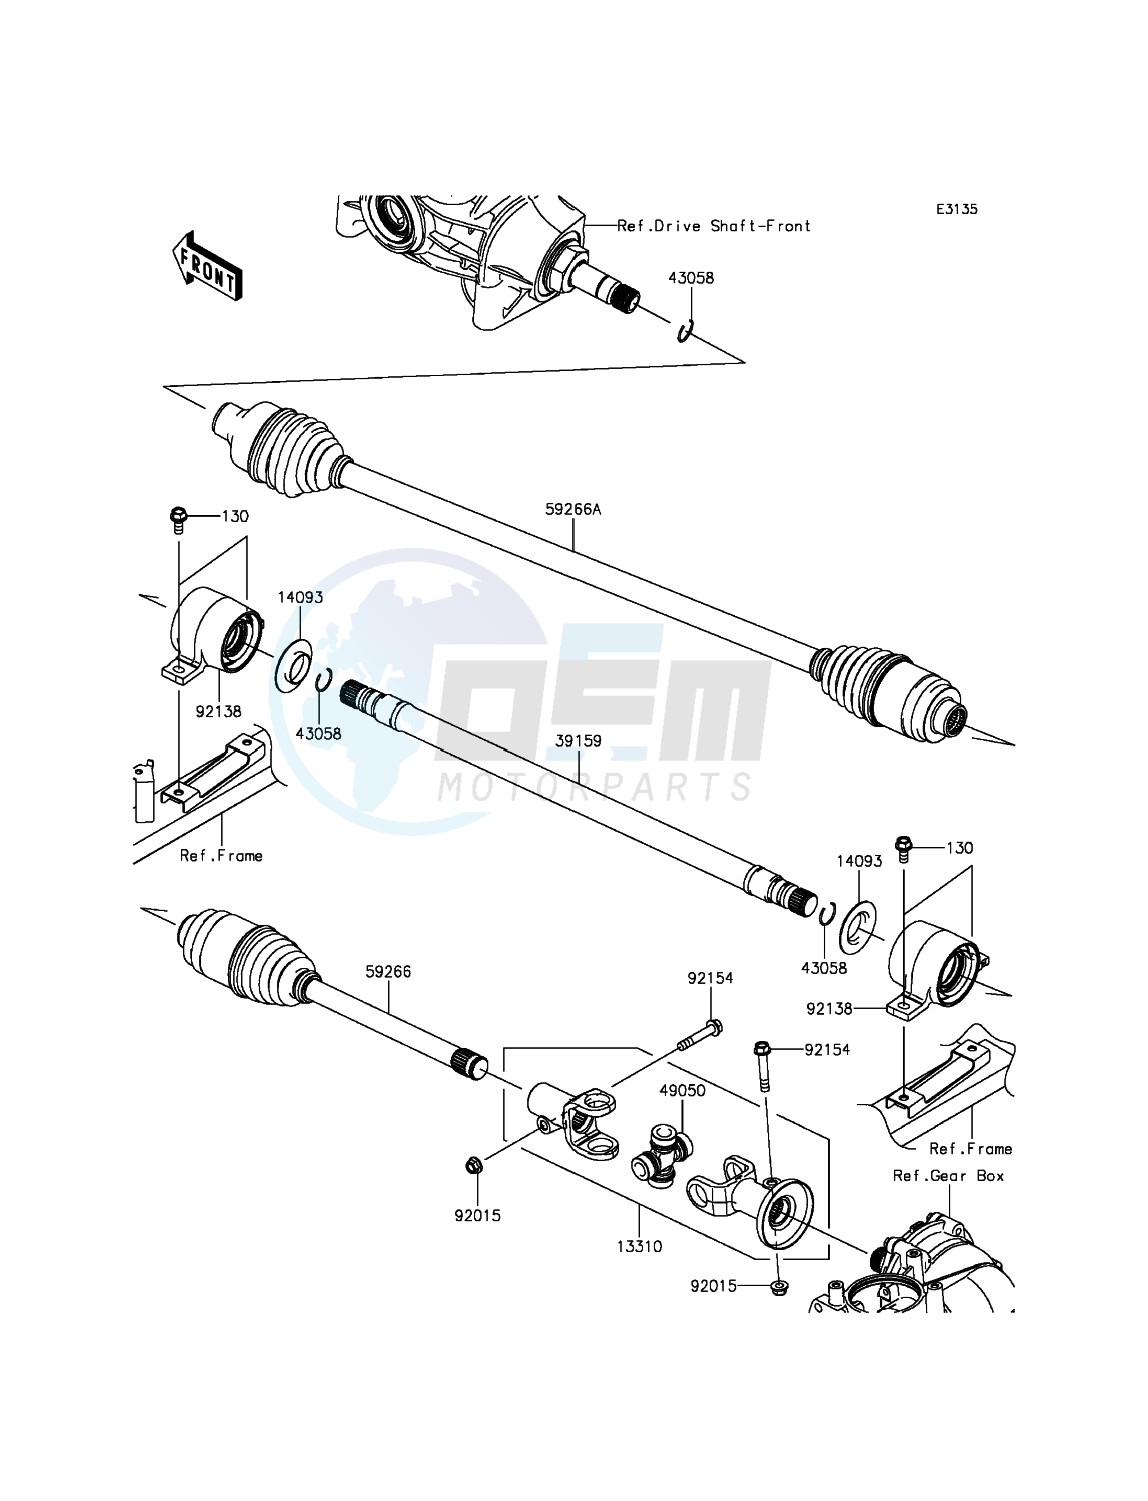 Drive Shaft-Propeller blueprint